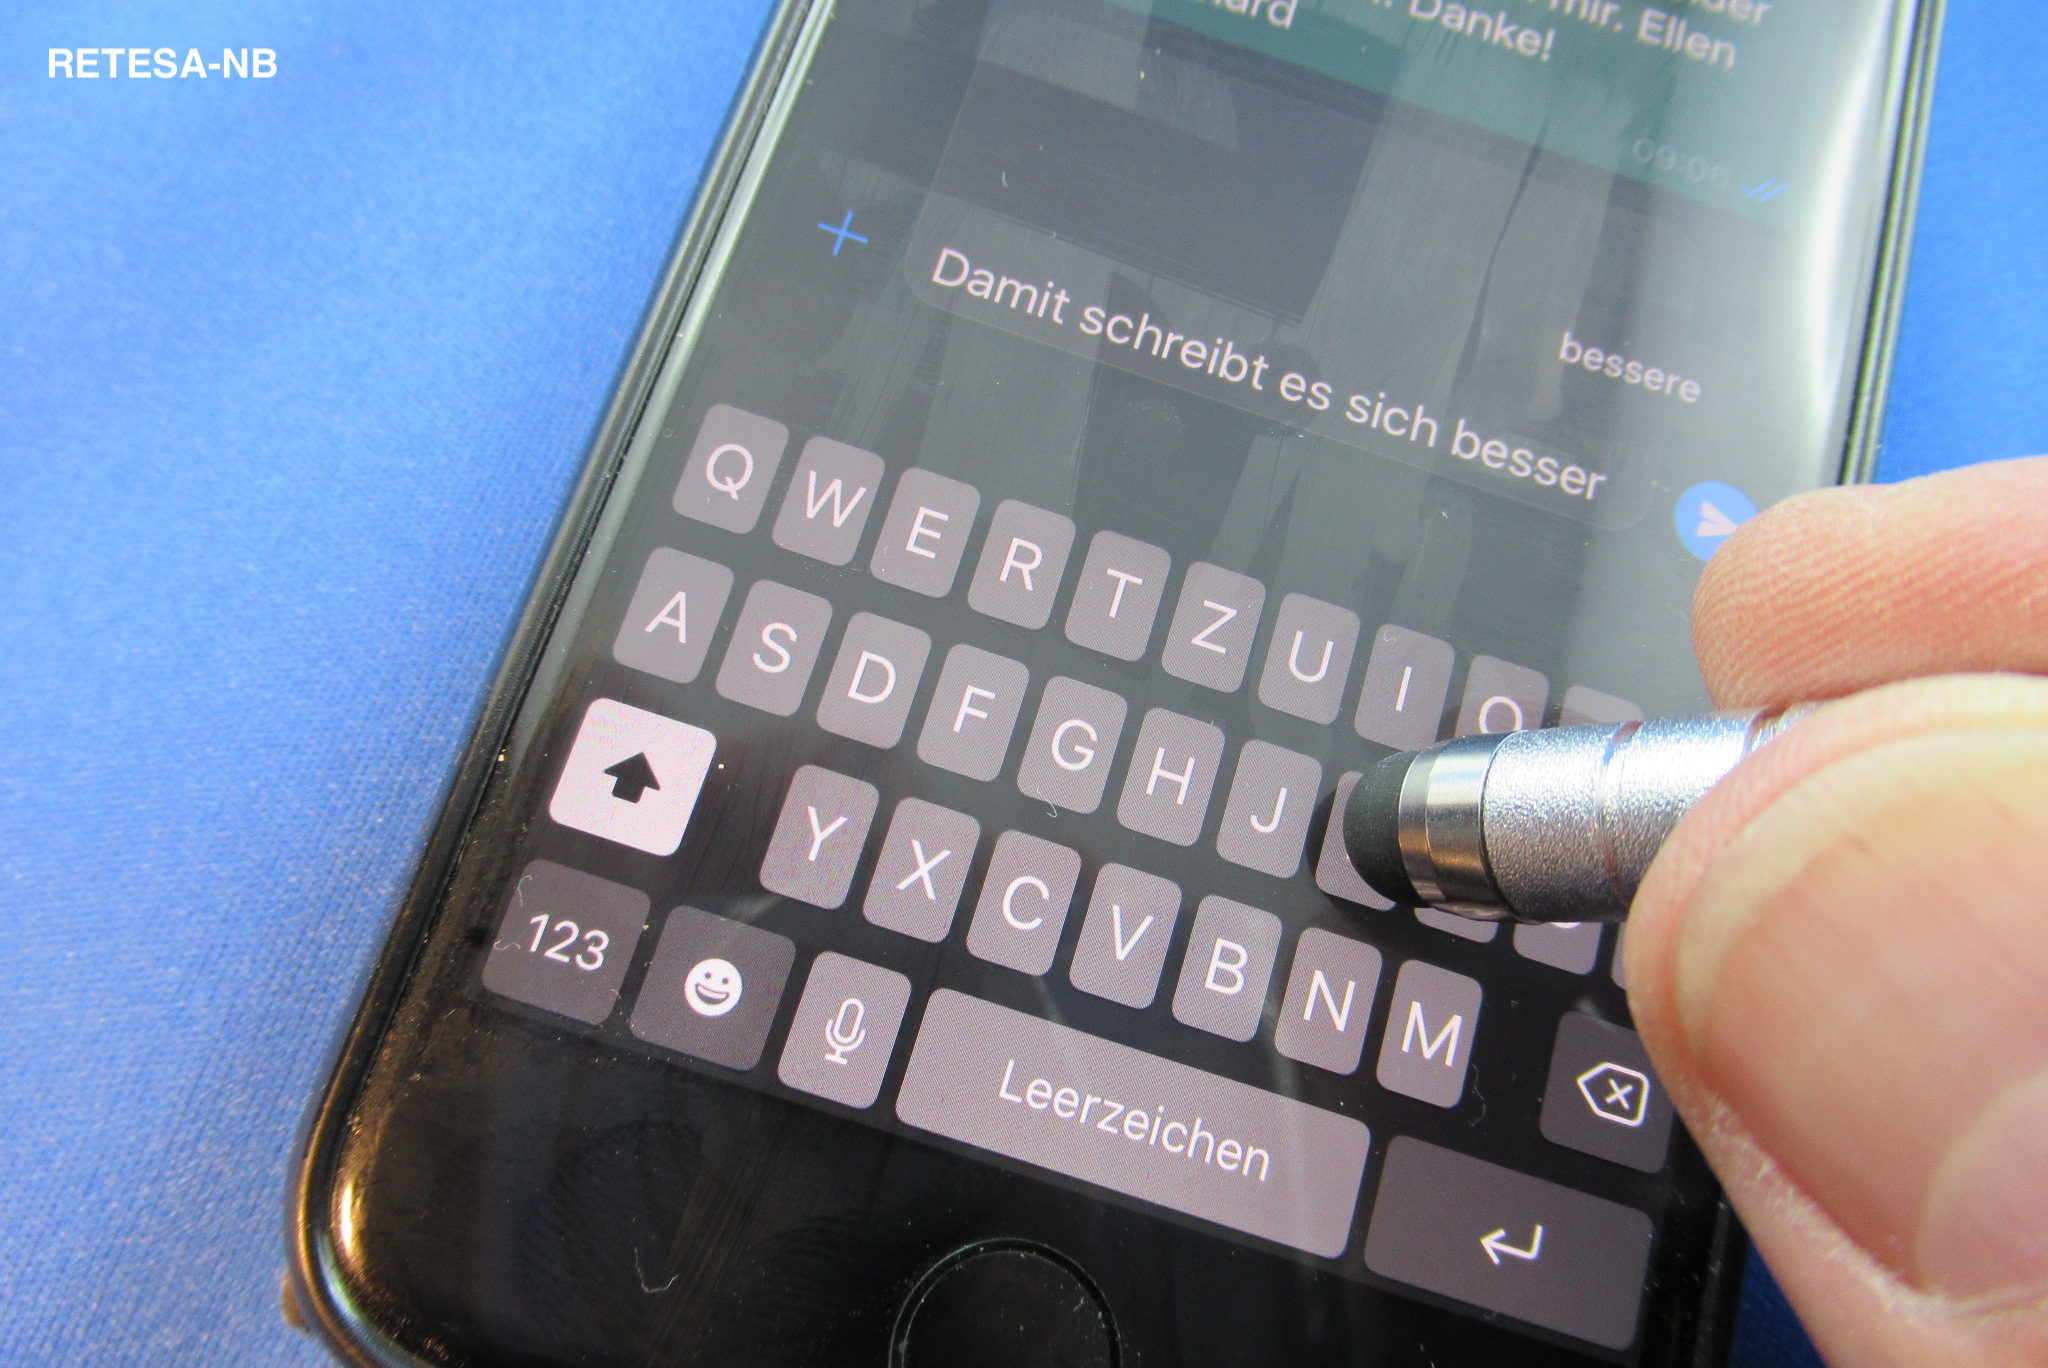 Metall Mini Stylus Stift für iPad iPhone Smartphone